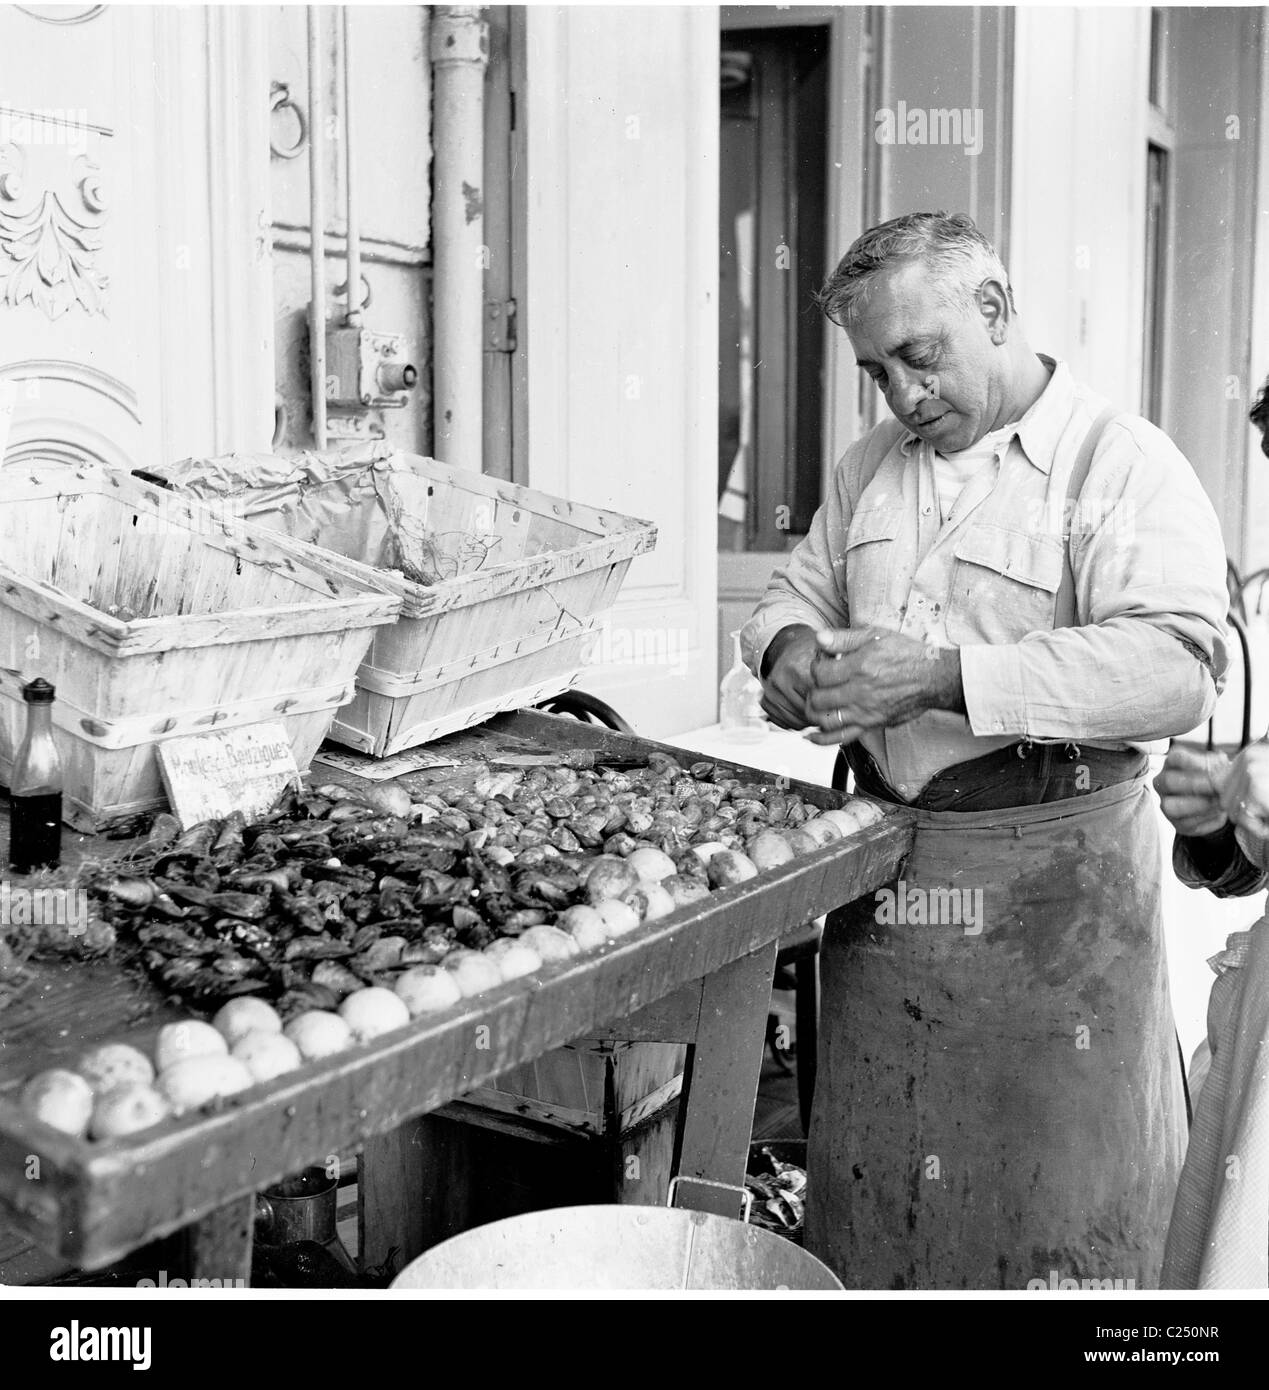 1950s, photo historique par J Allan Cash d'un commerçant français ouvrant des obus sur sa cale à poissons du vieux port de Marseille, France. Banque D'Images